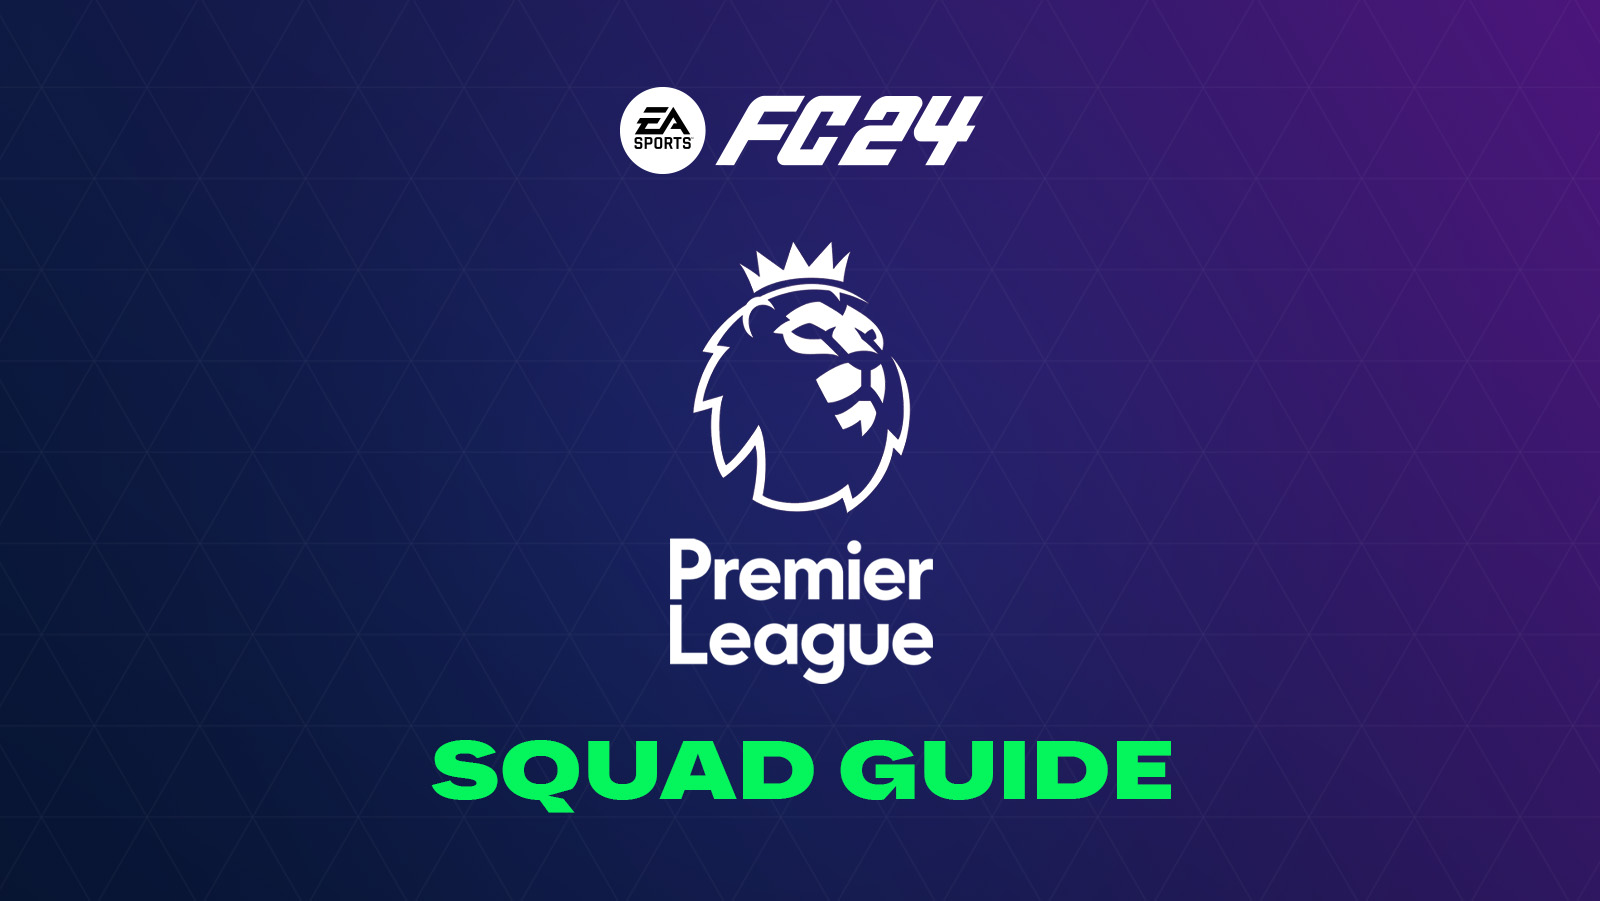 FC 24 Premier League Squad Guide